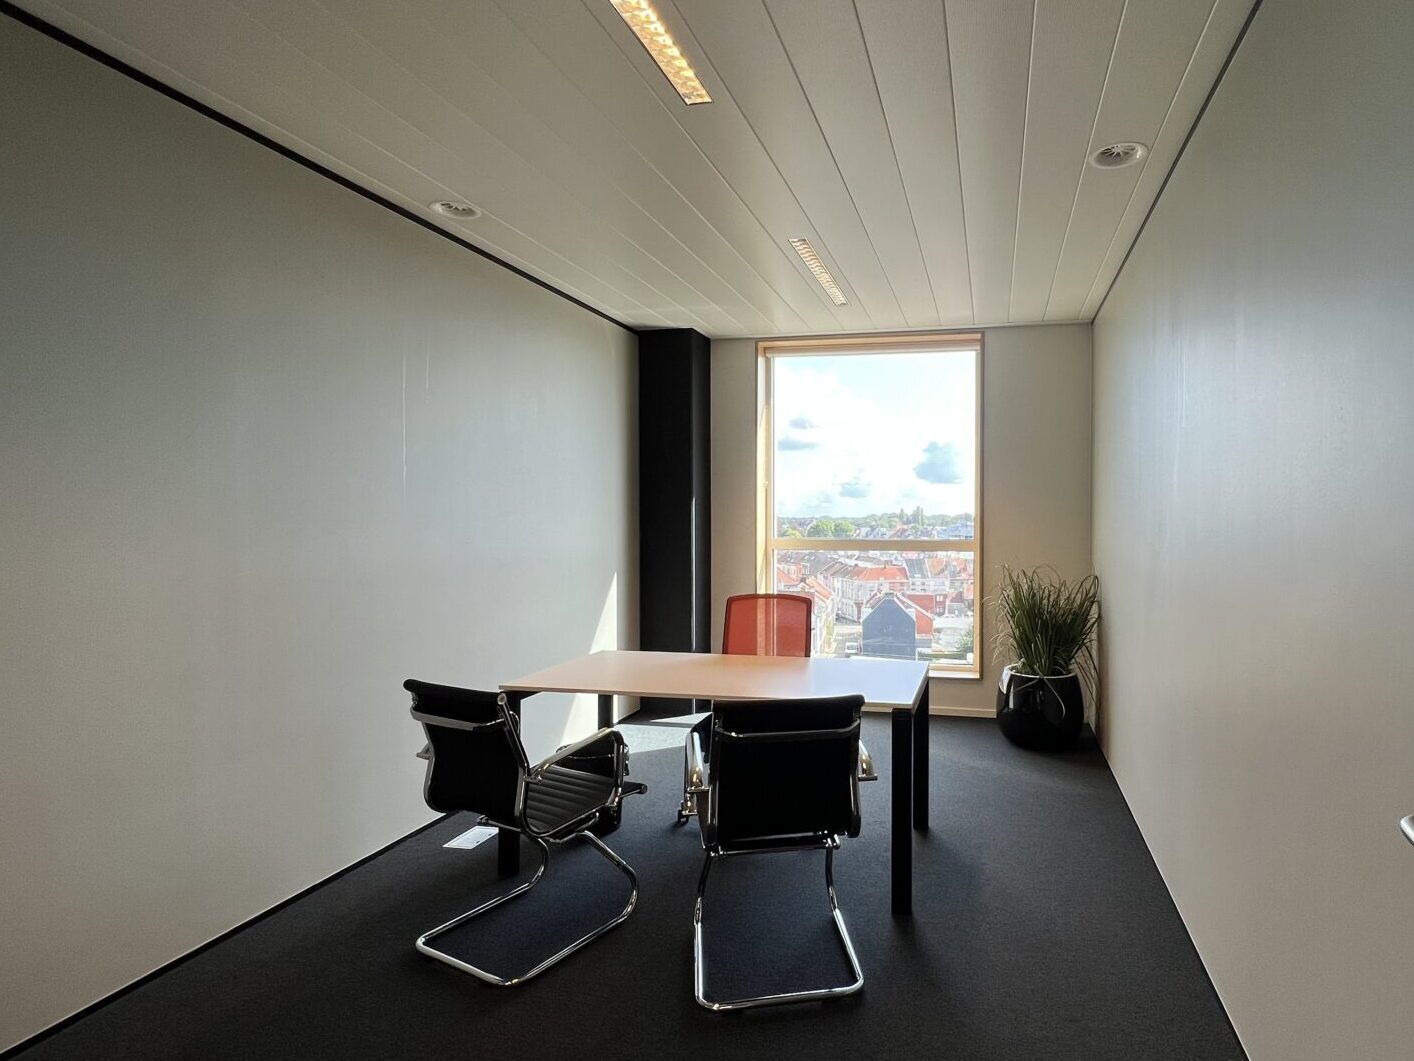 Een kantoor met strakke lijnen en moderne meubels, perfect voor zakelijke vergaderingen